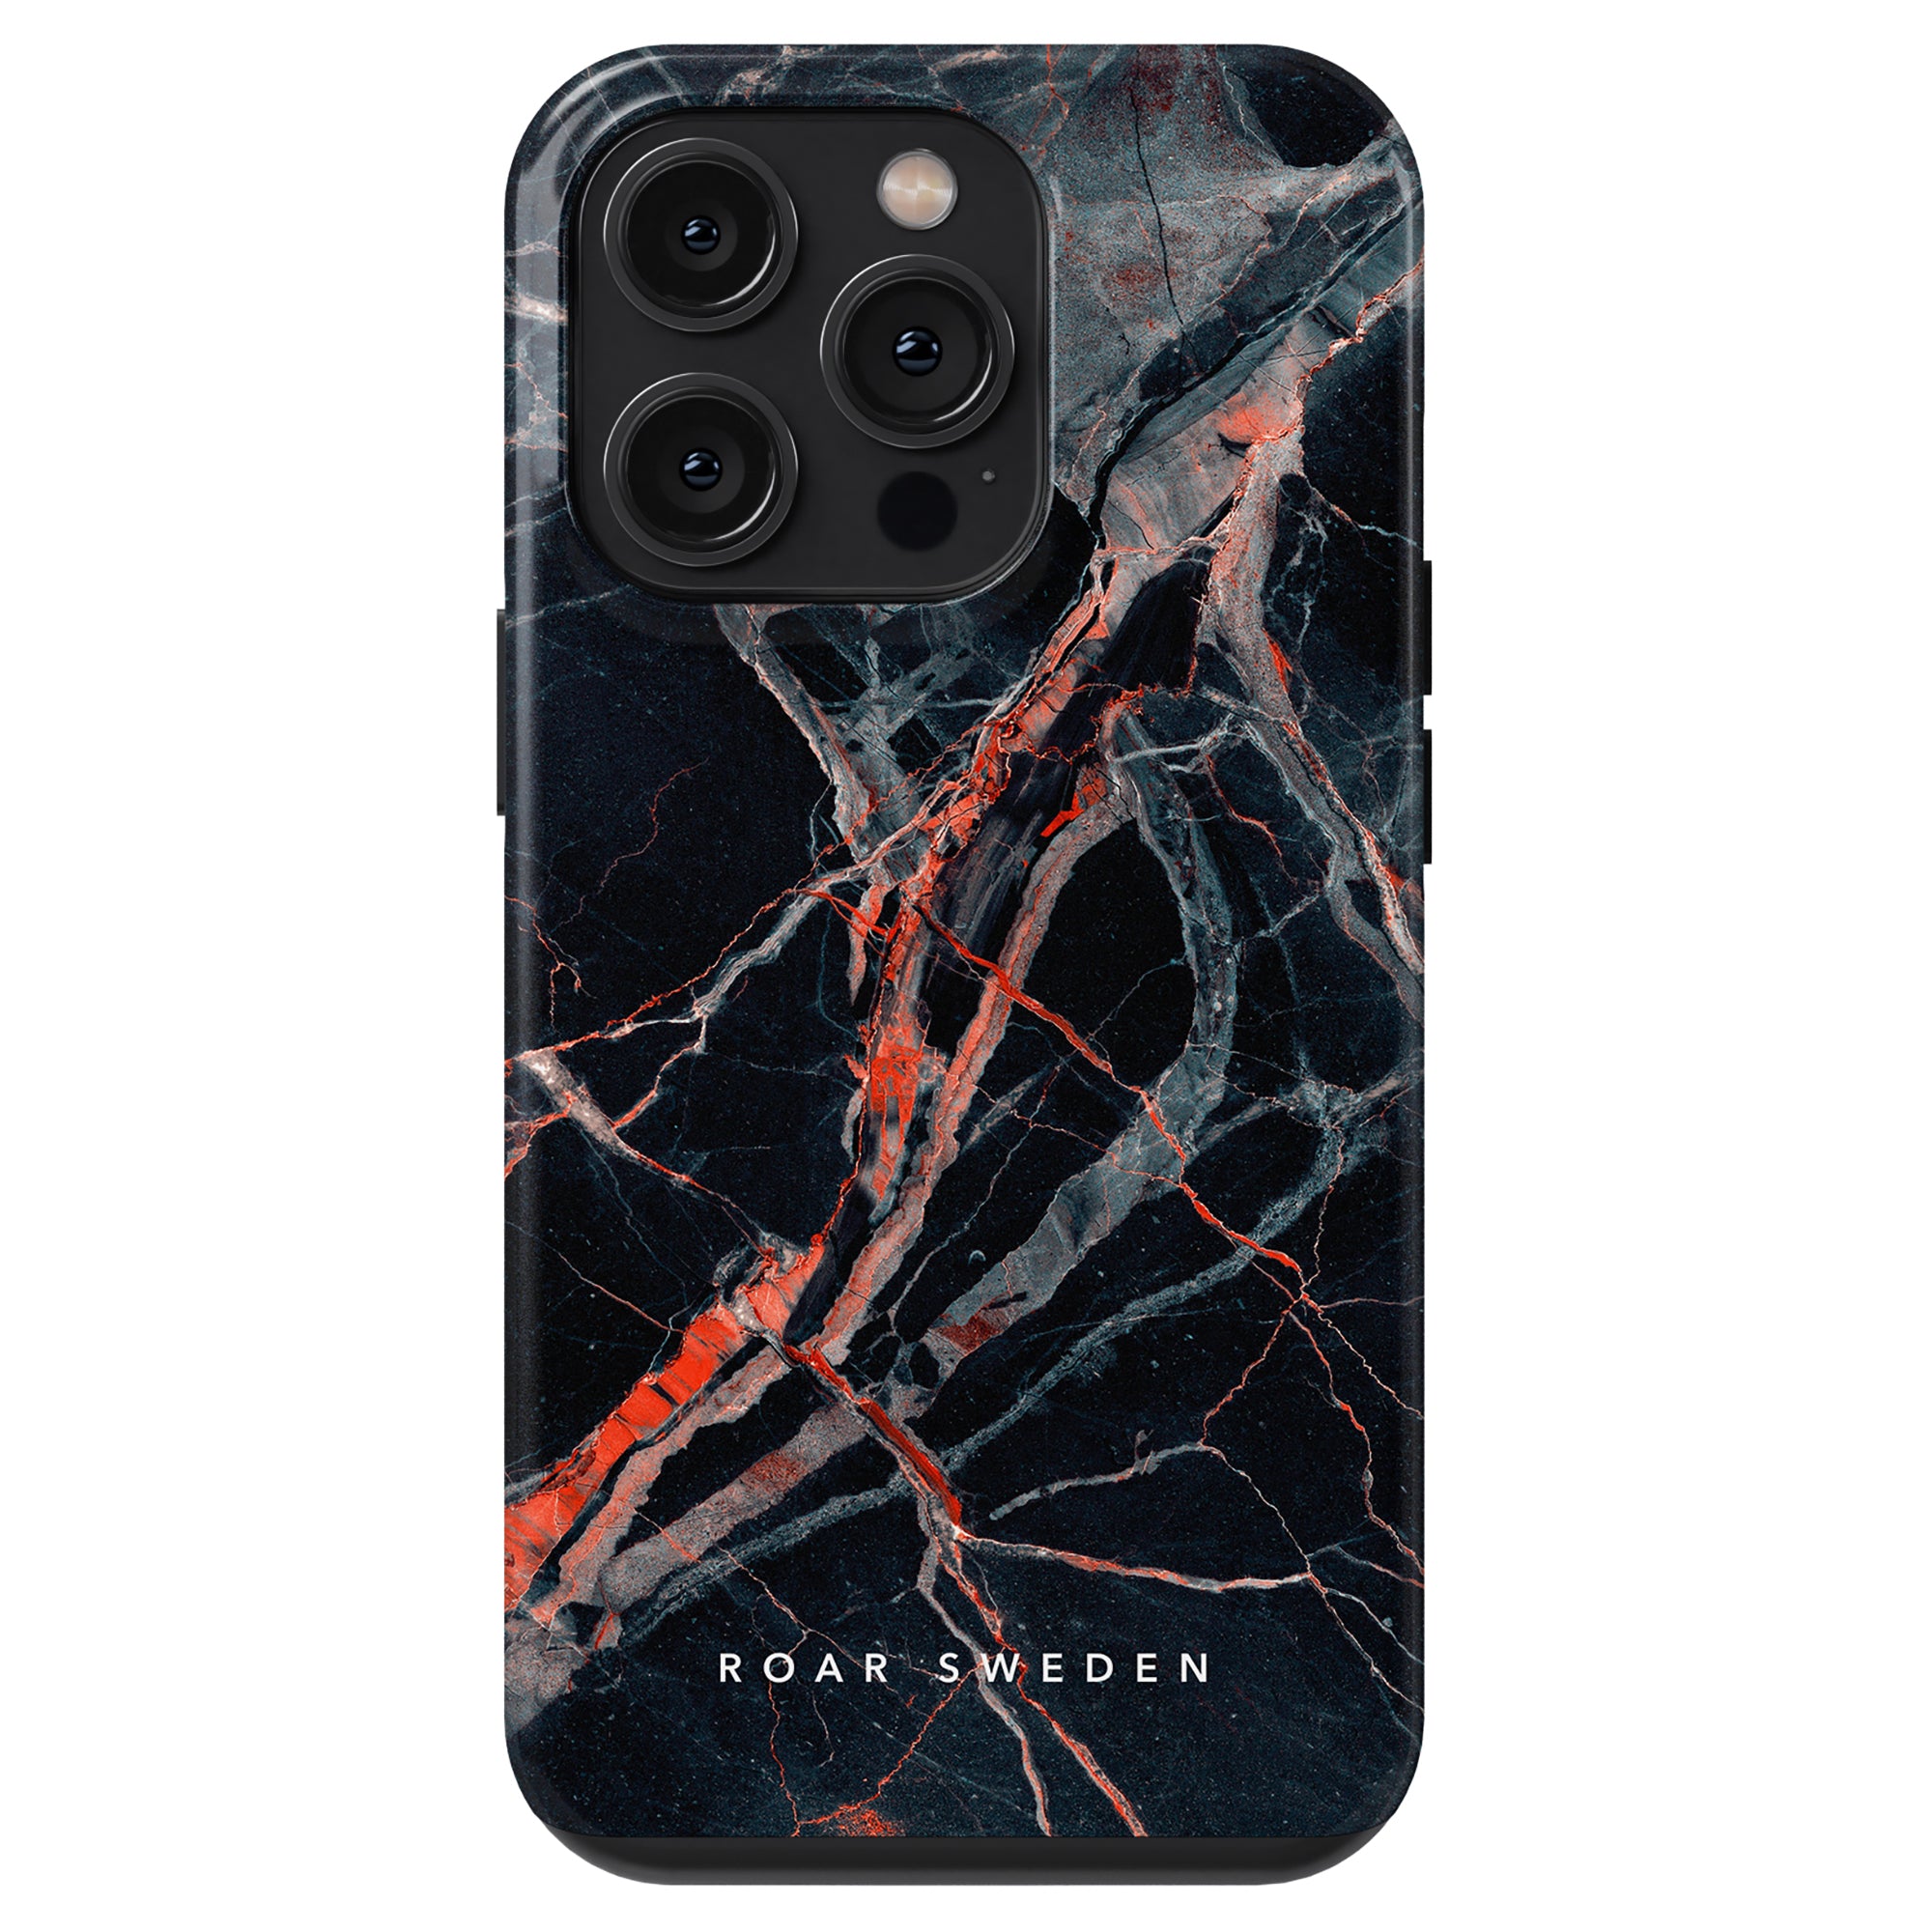 Ett svart och röd marmordesign Veins - Tufft fodral för iPhone 11 Pro med förbättrat smartphoneskydd.